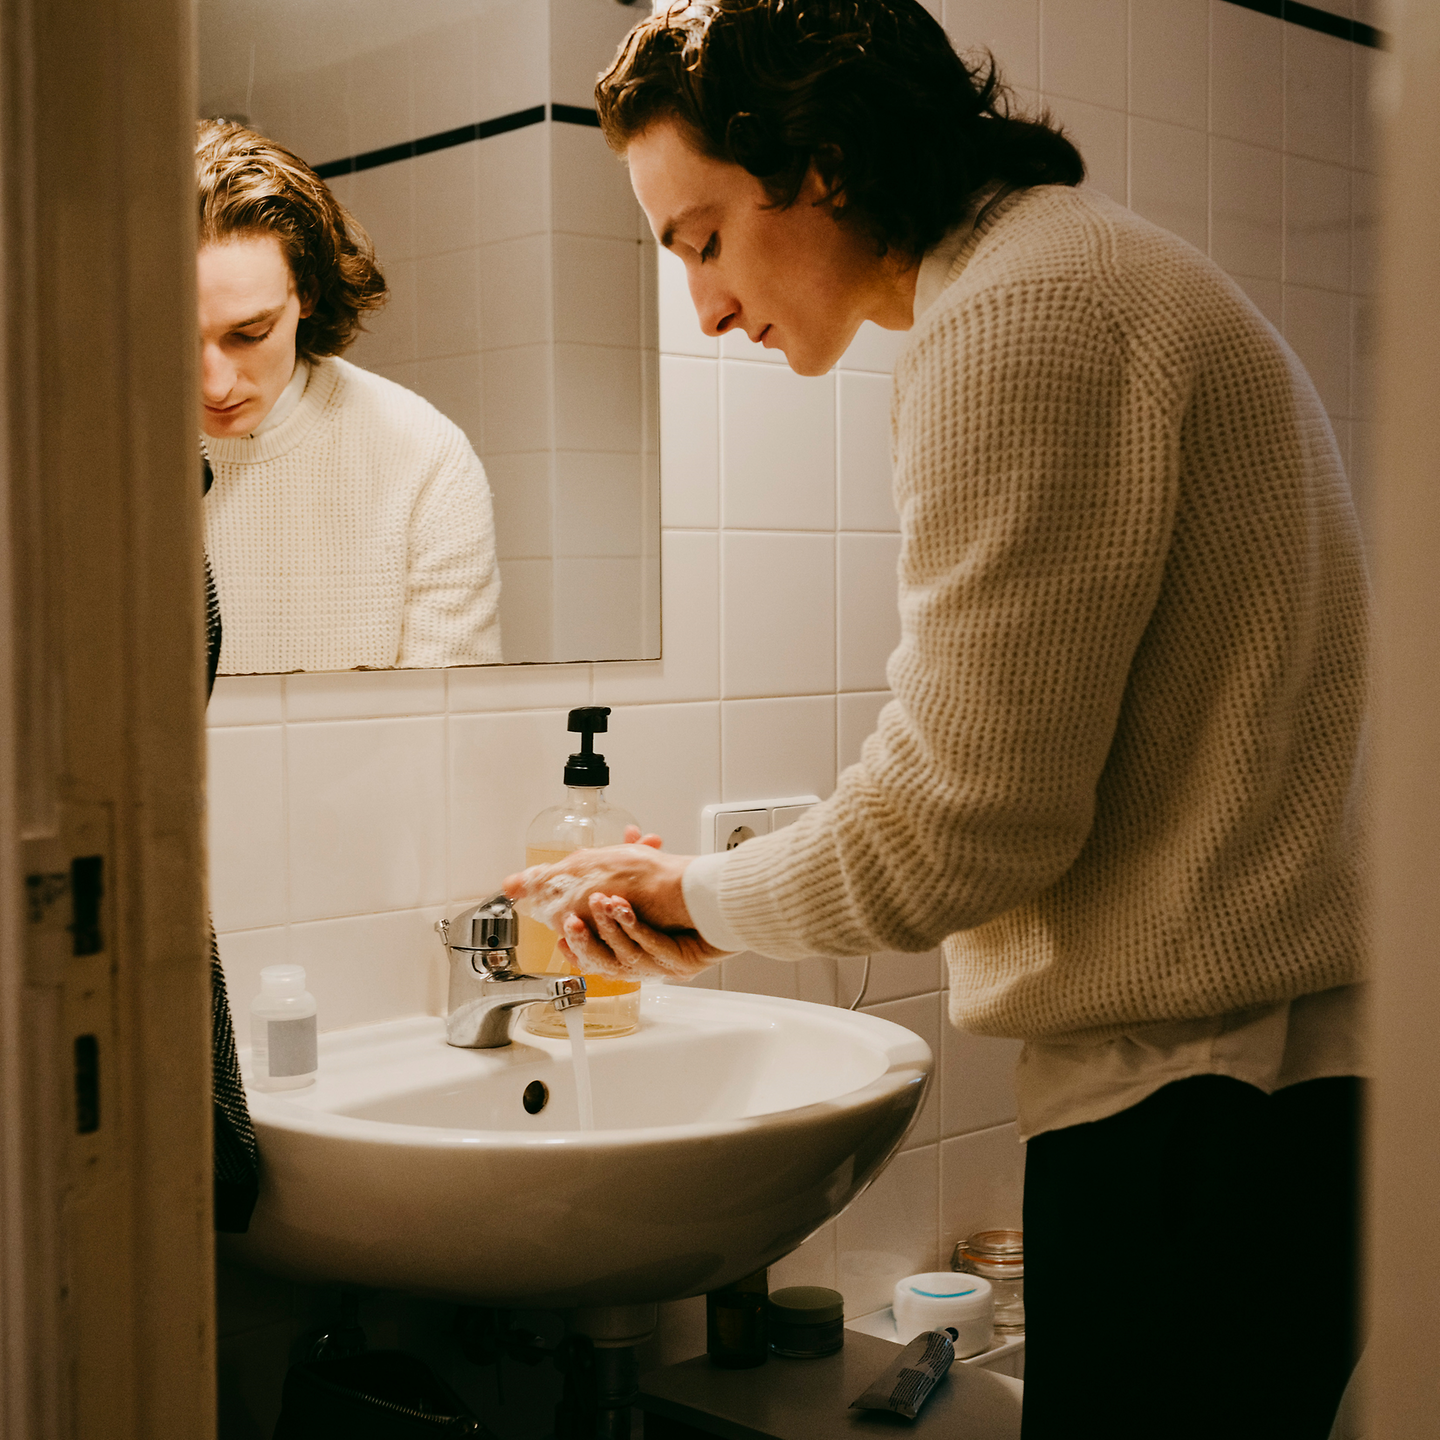 Ein junger Mann wäscht sich im Bad die Hände